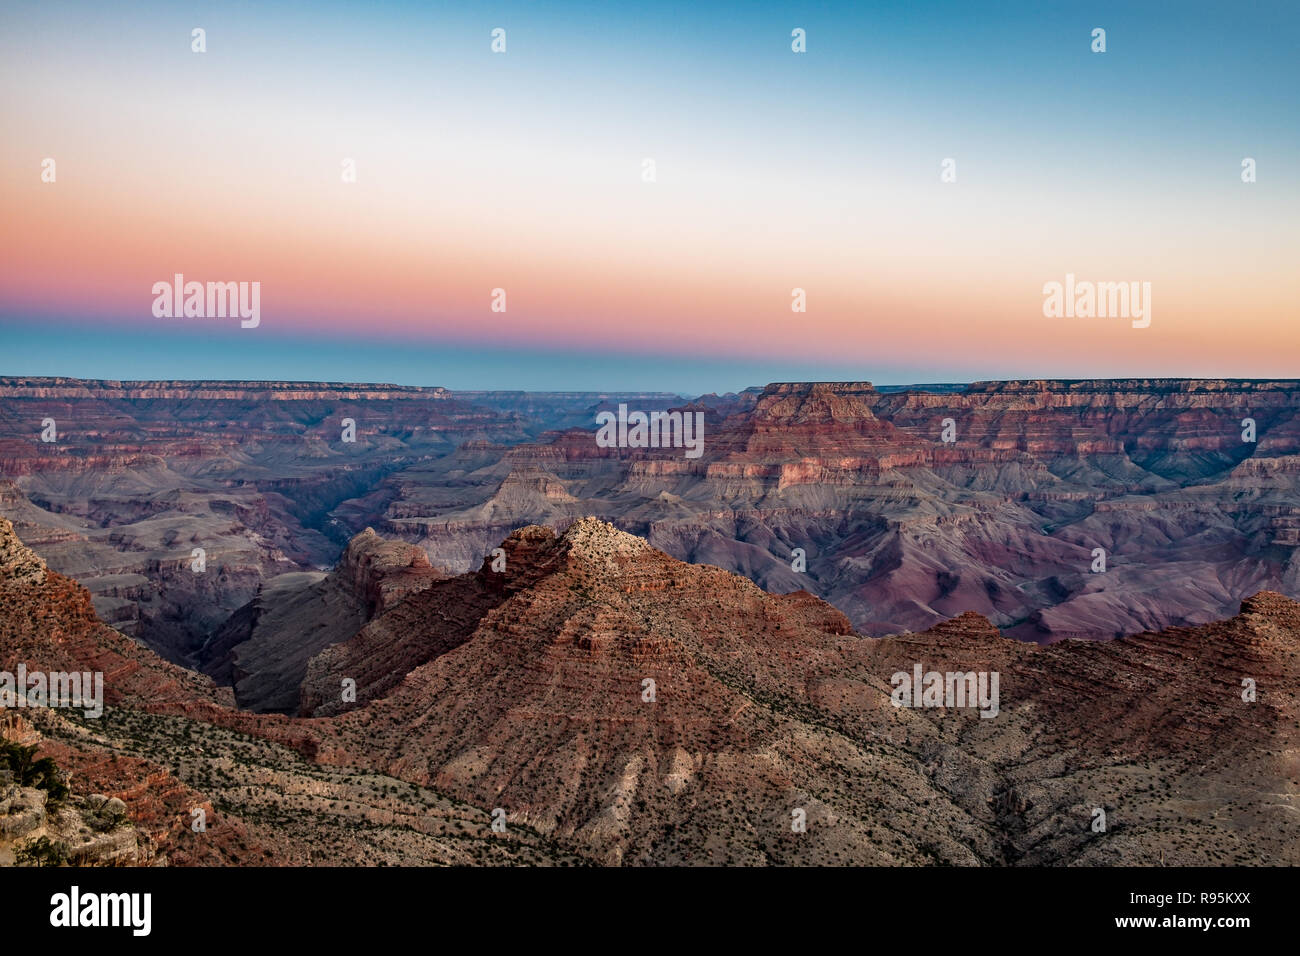 Une vue sur le Grand Canyon au lever du soleil/coucher du soleil de l'Arizona, USA Banque D'Images